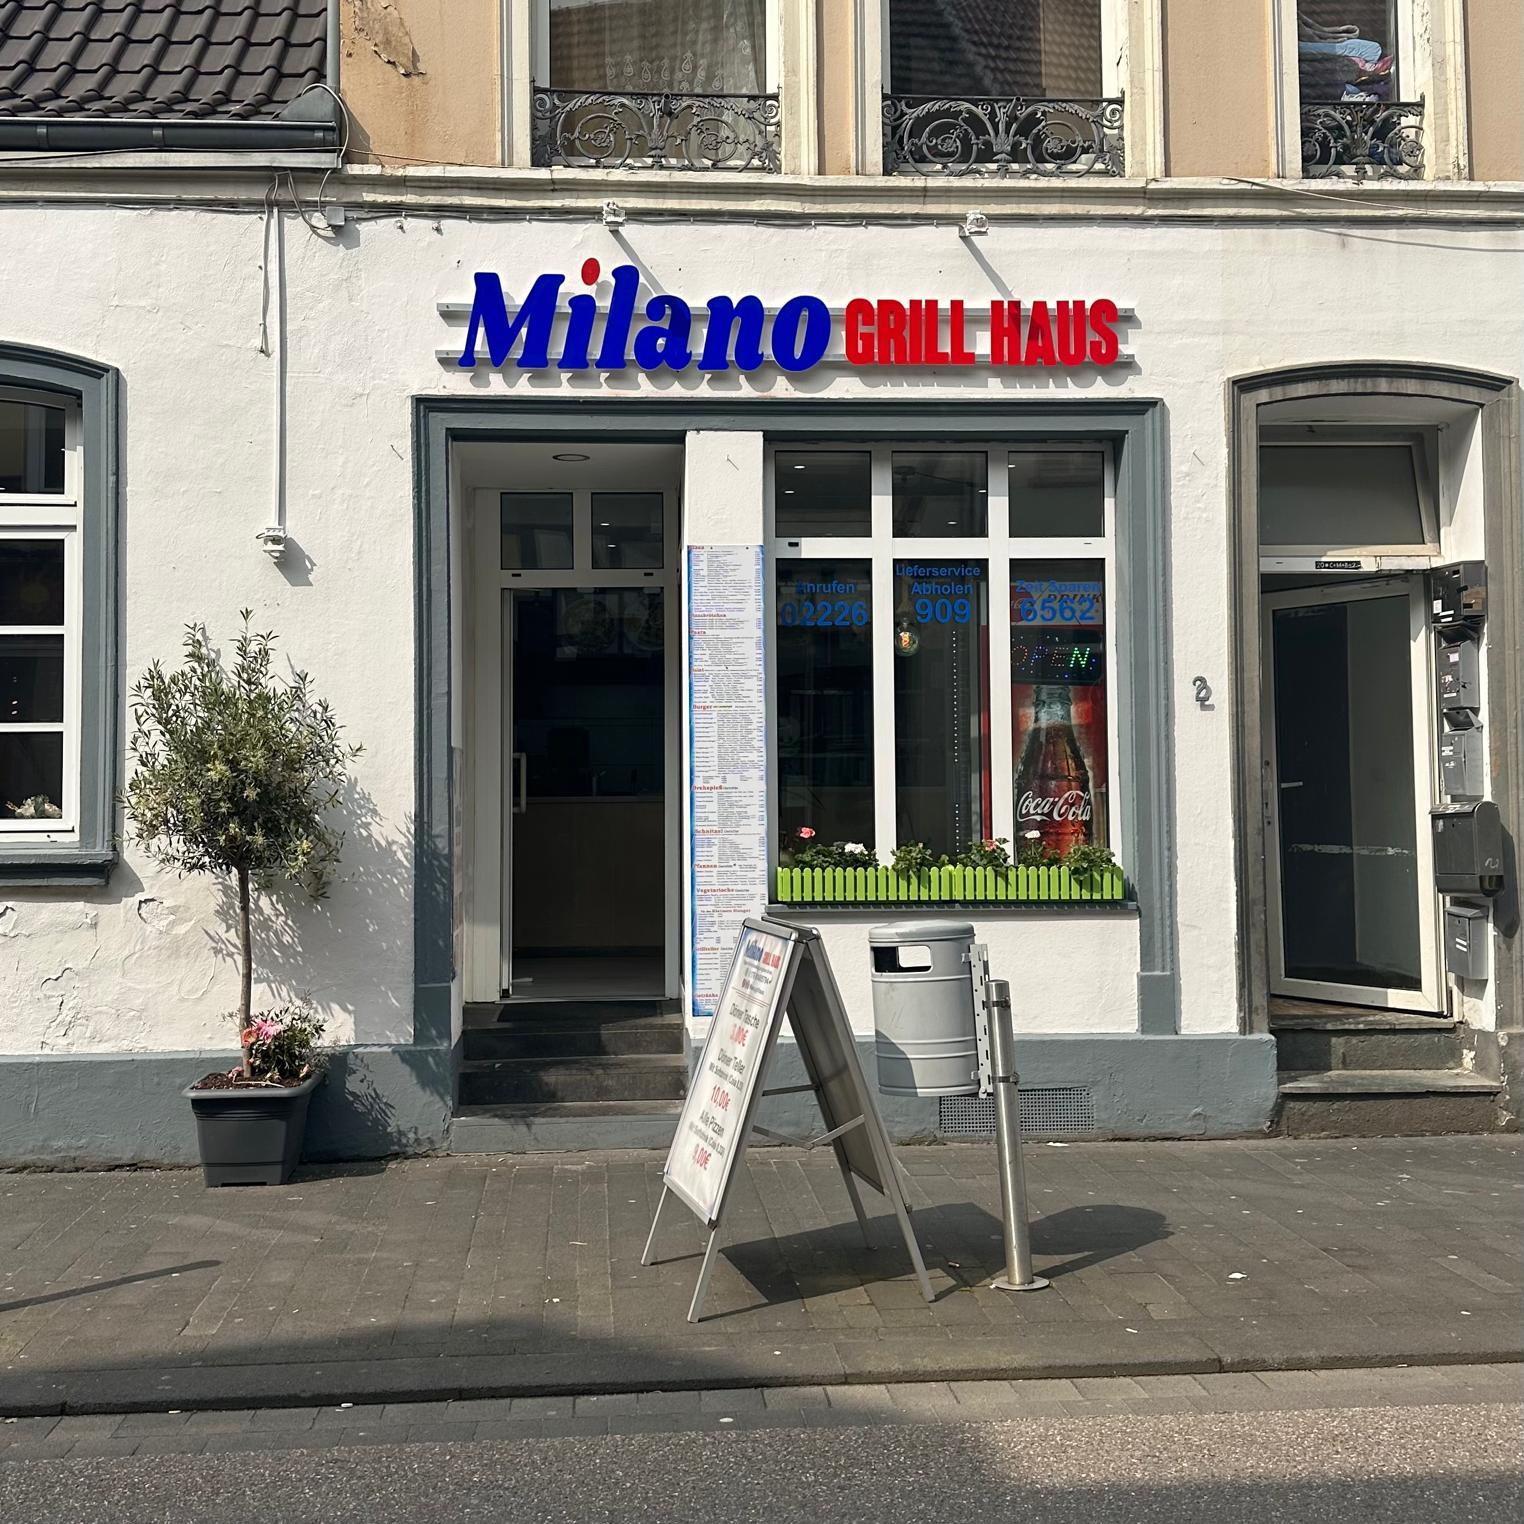 Restaurant "Milano Grill Haus" in Rheinbach